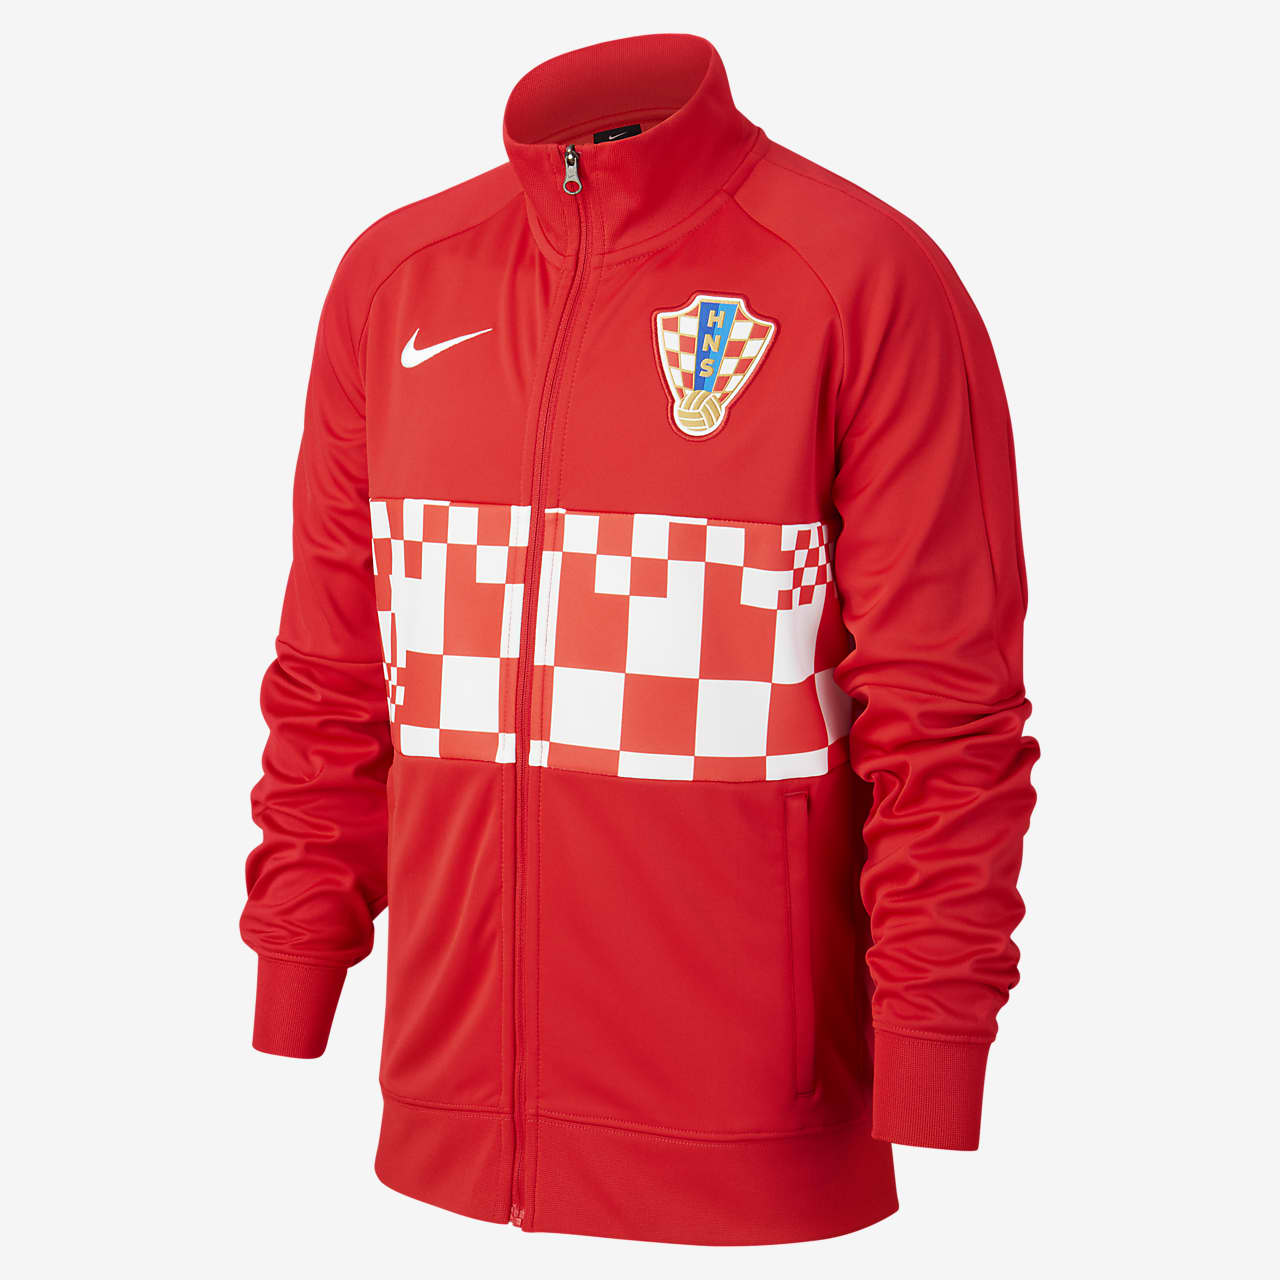 Croatia Older Kids' Football Jacket